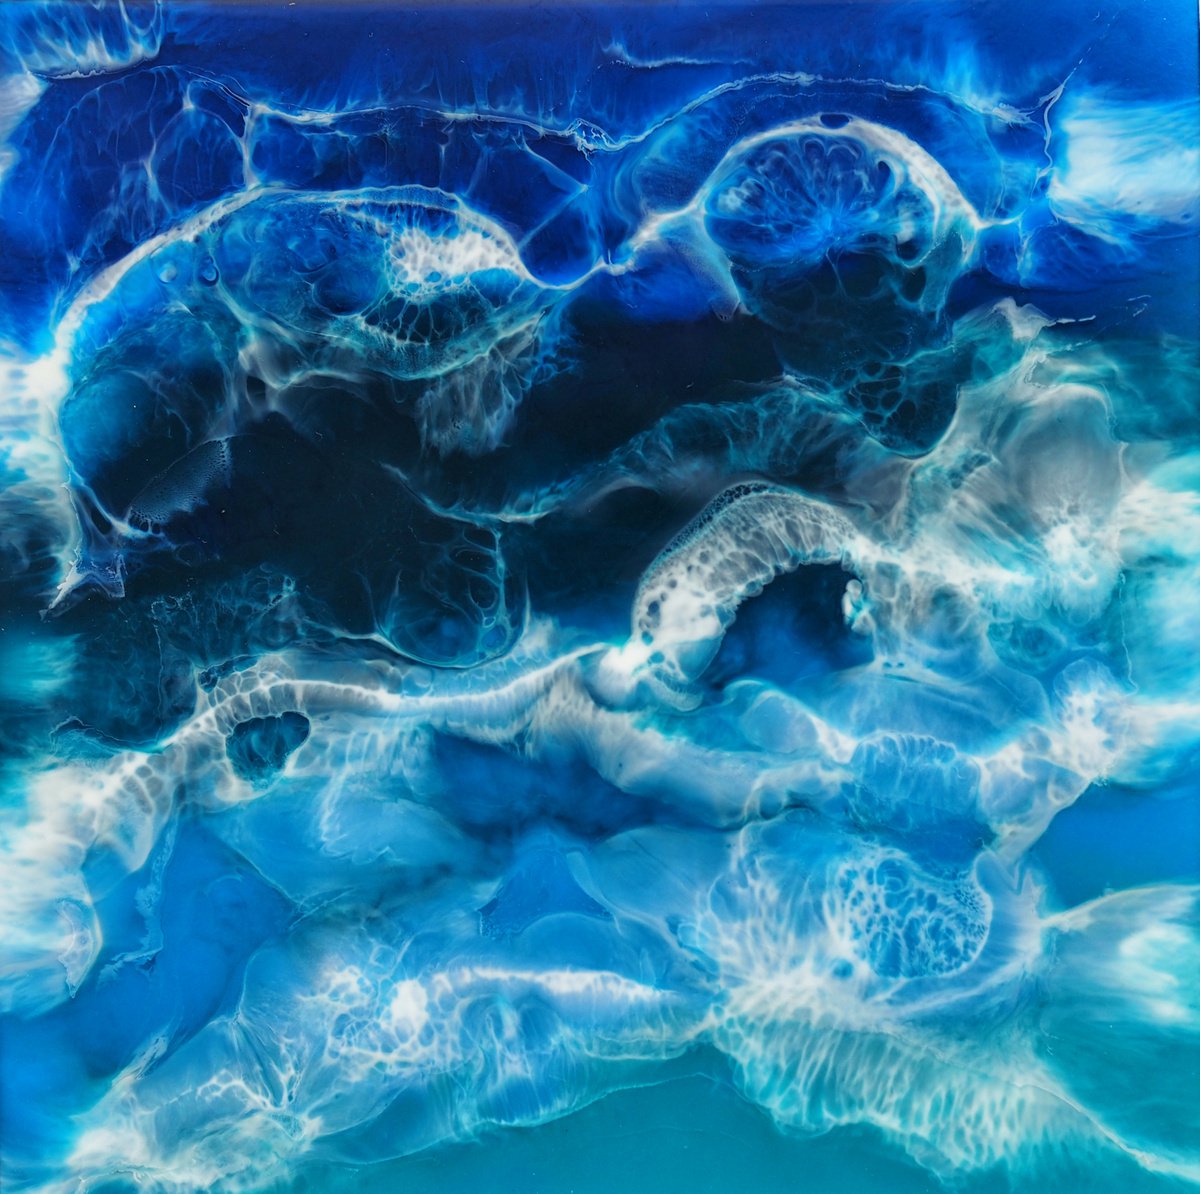 Sea inside - original seascape artwork, epoxy resin on canvas by Delnara El